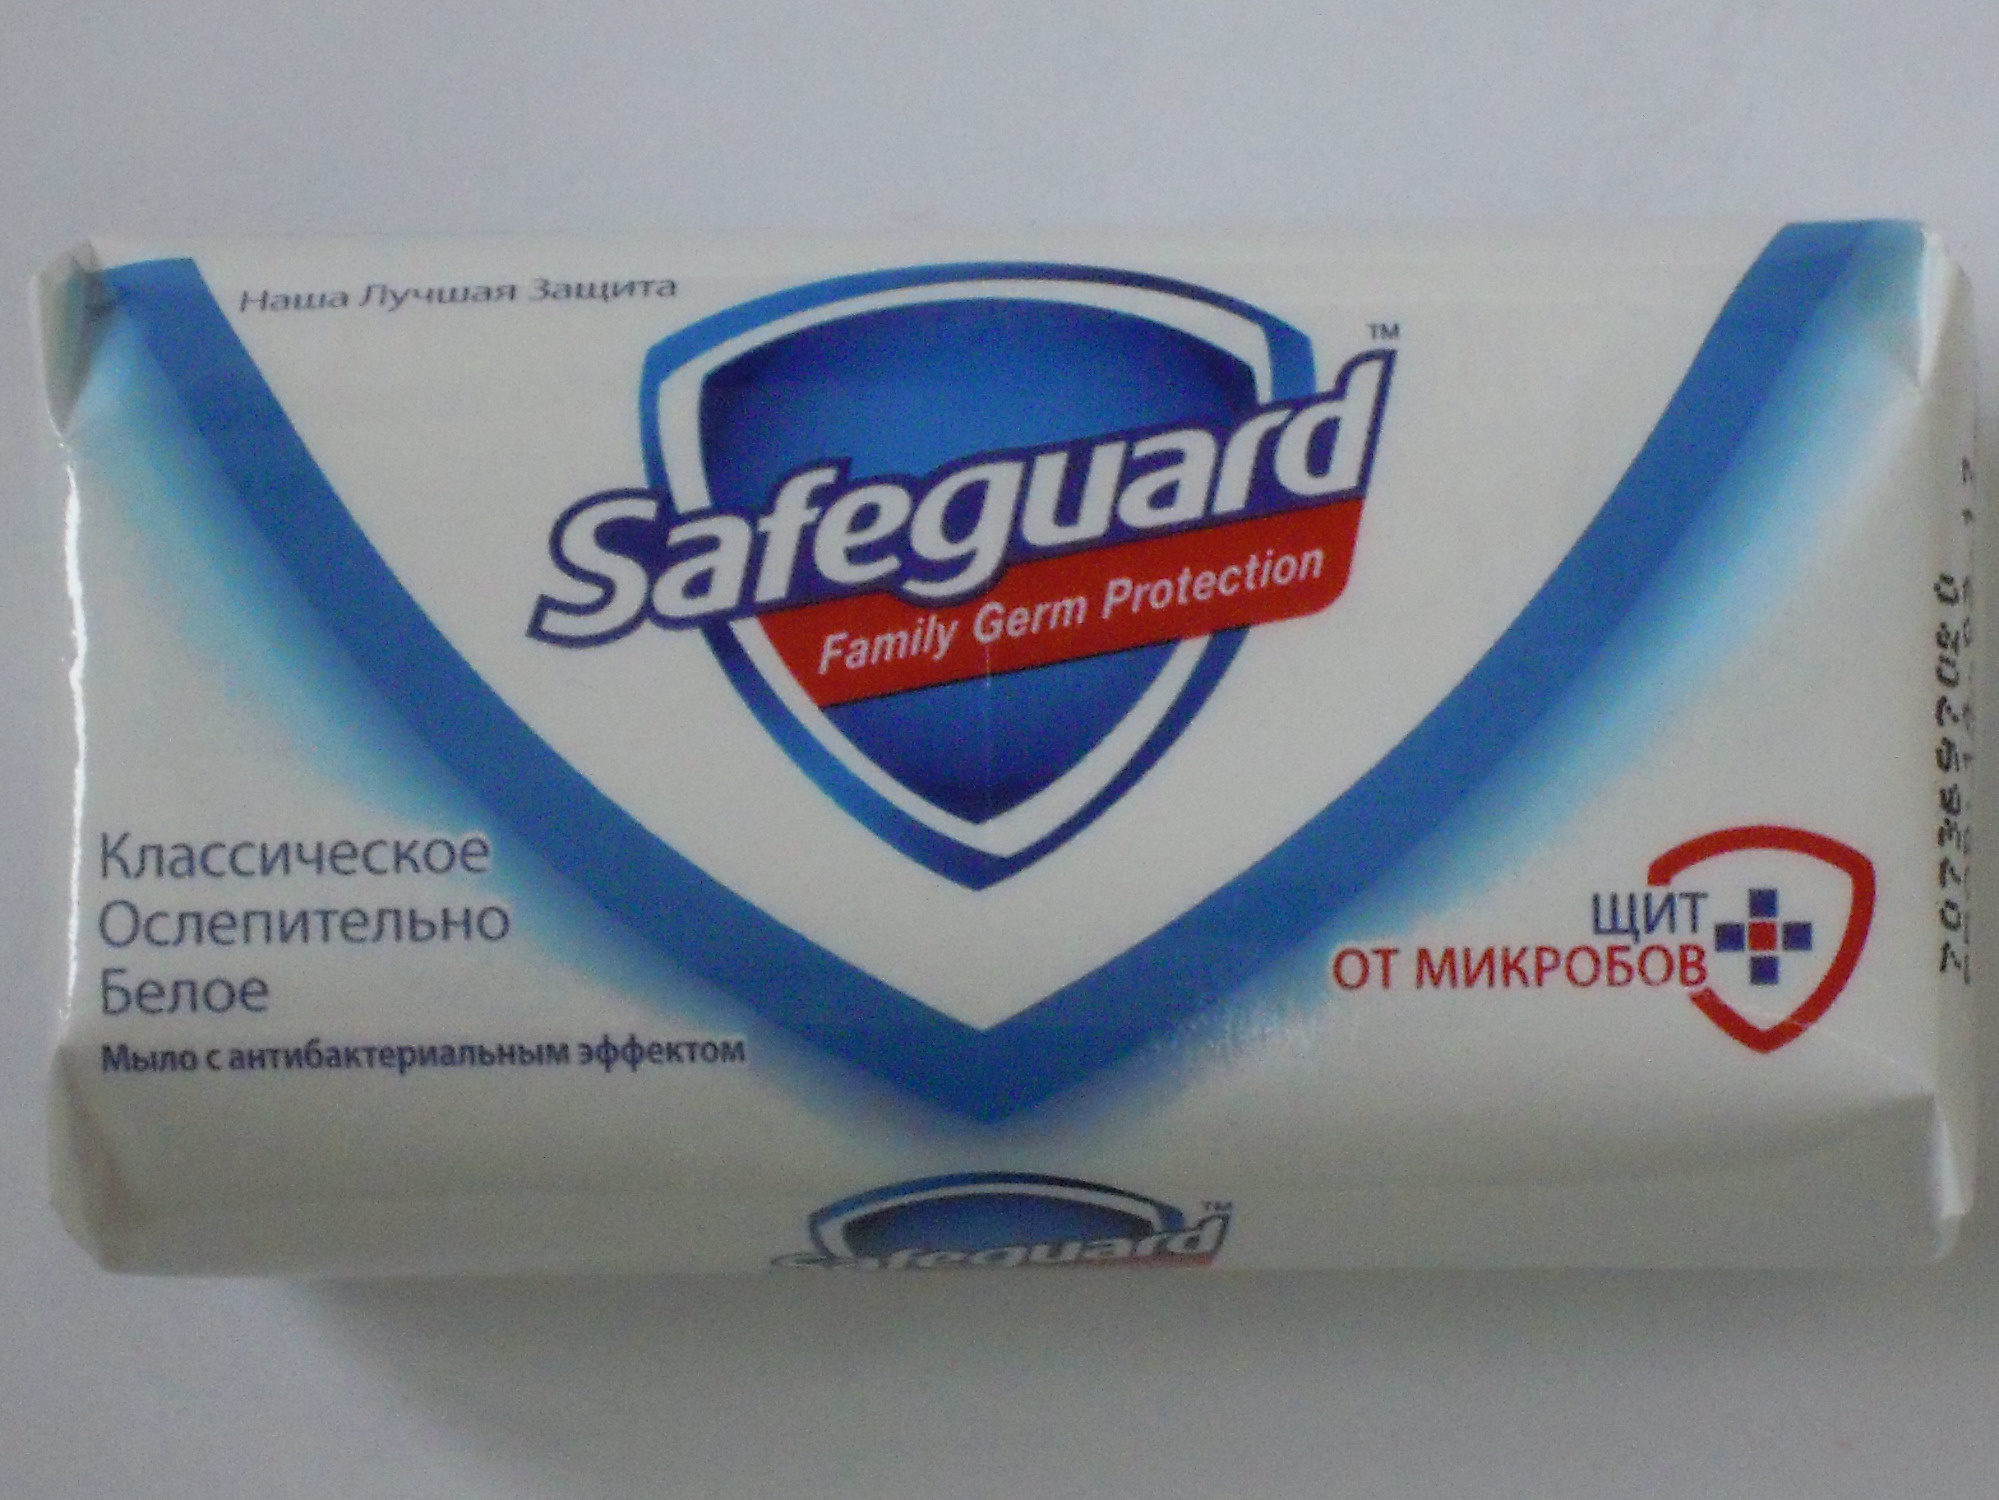 Safeguard Классическое Ослепительно Белое - מוצר - ru